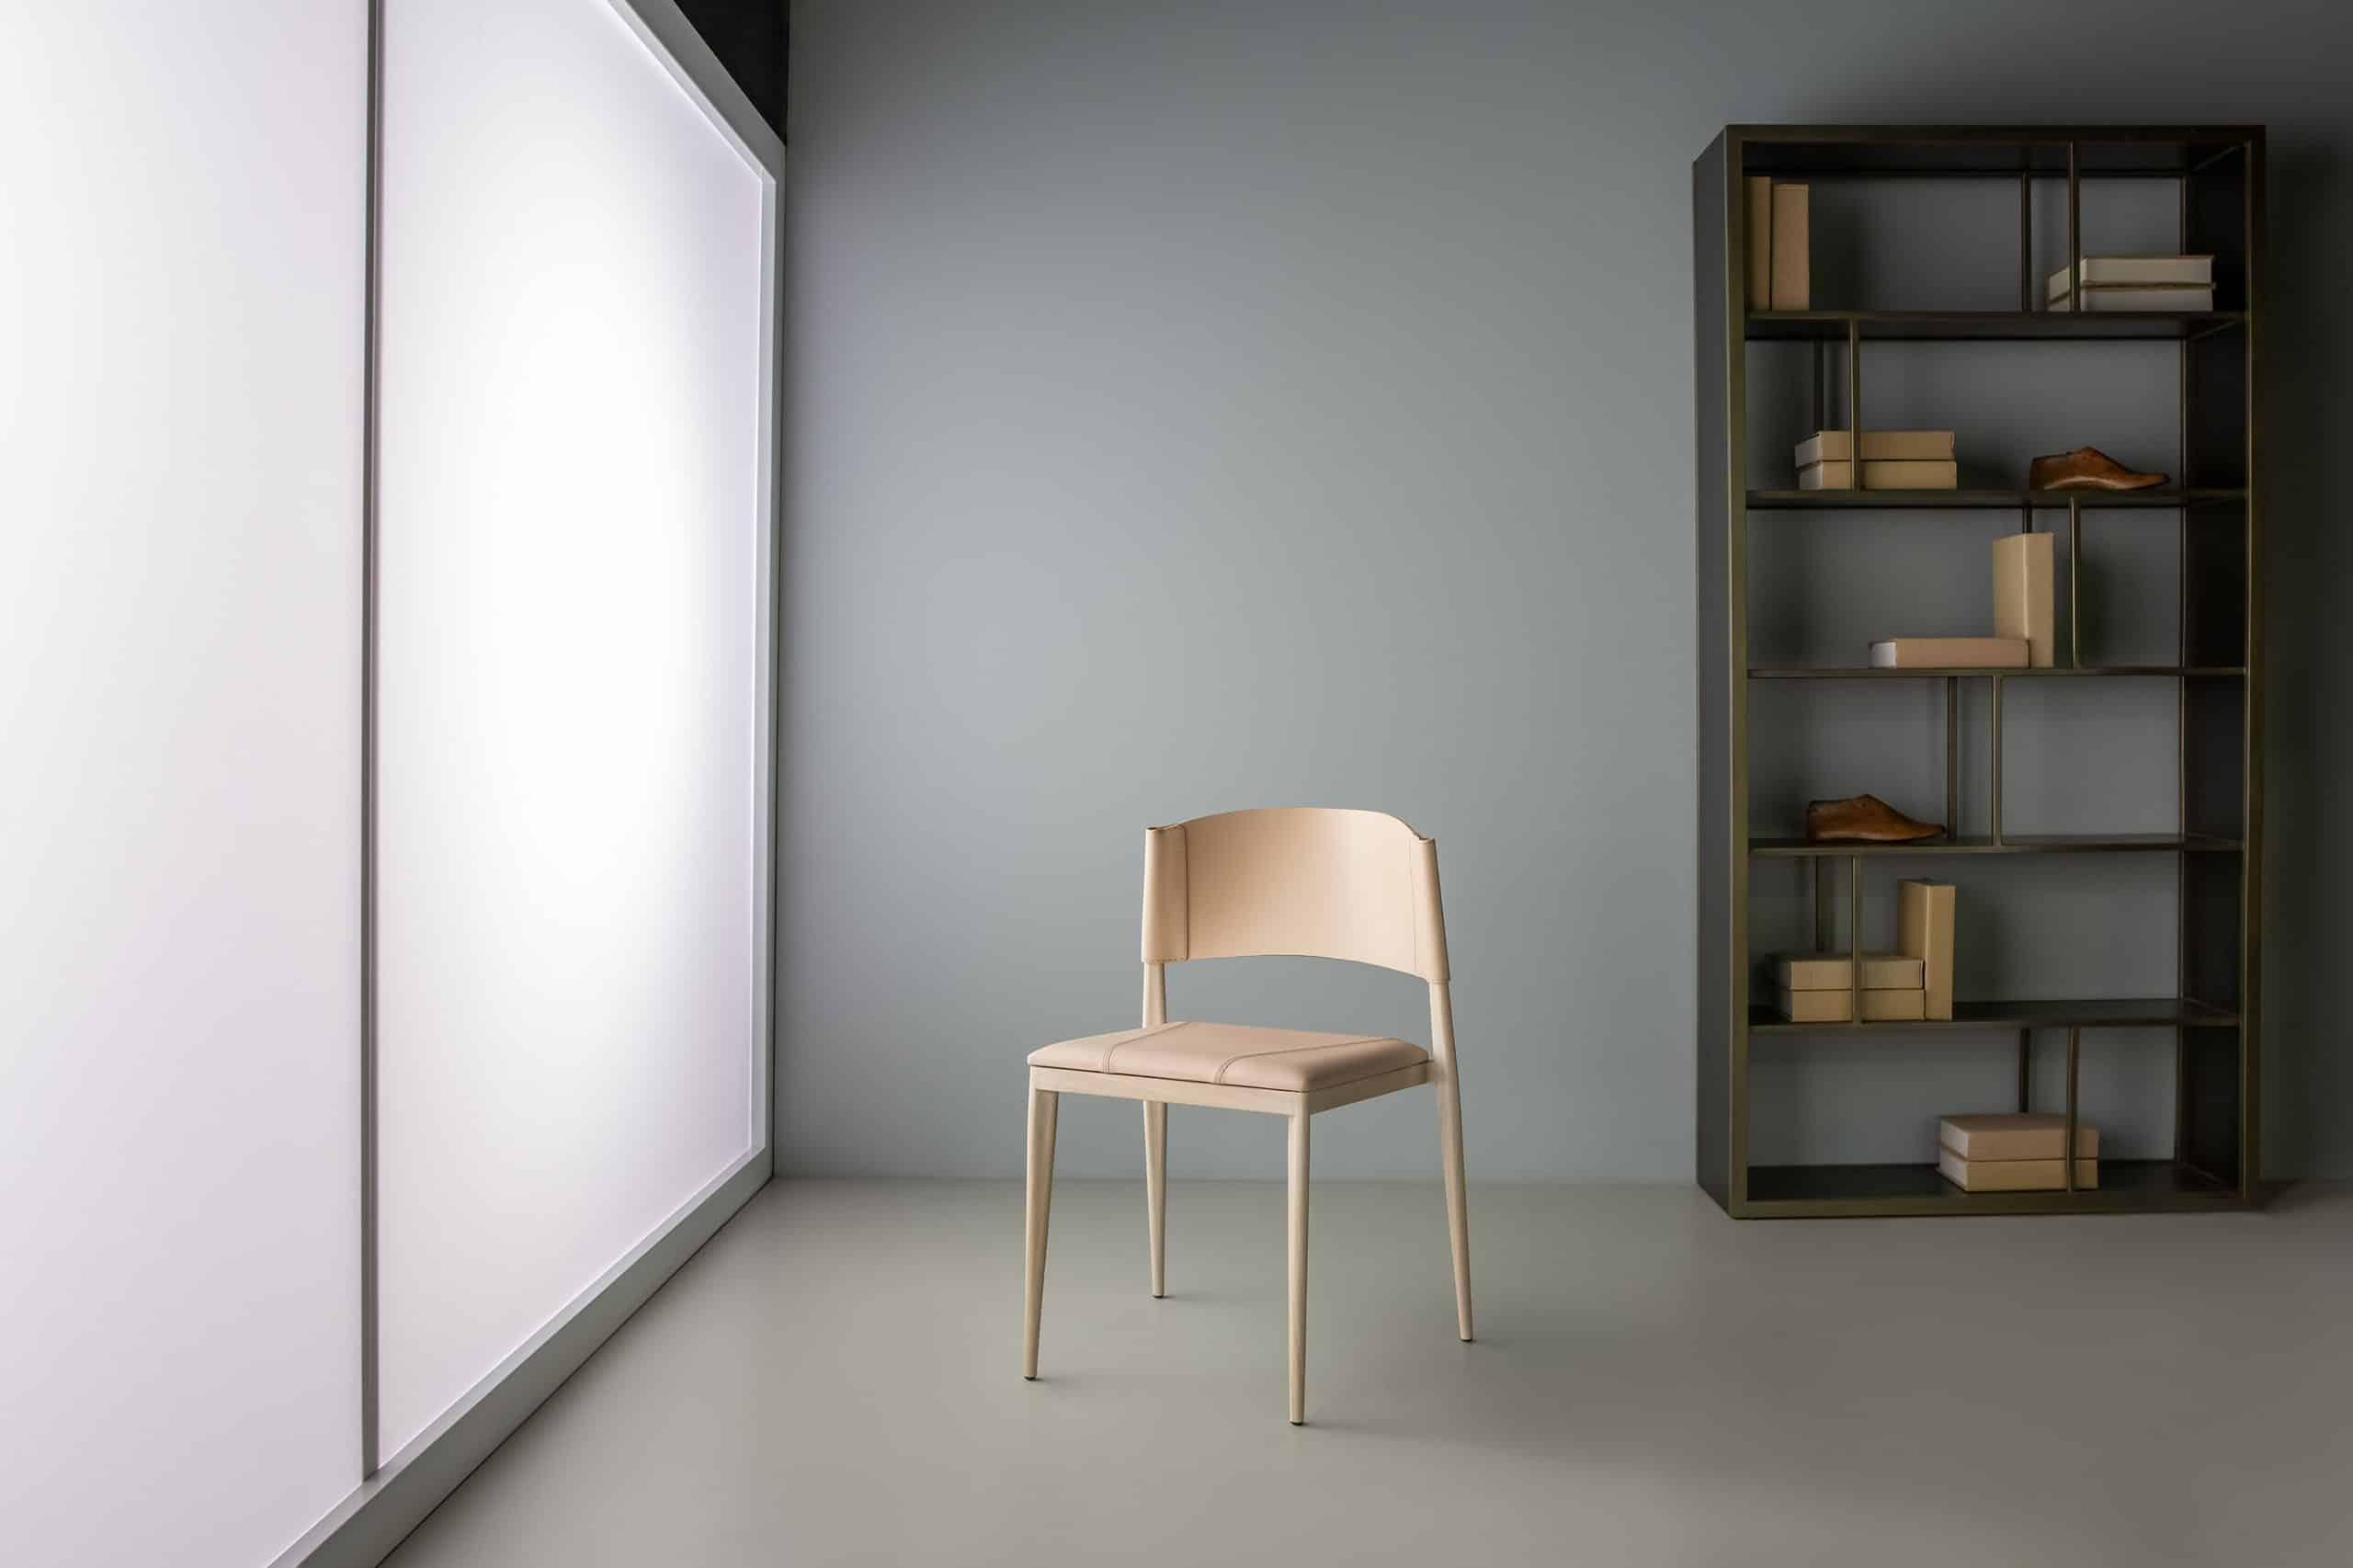 Ale Stuhl von Doimo Brasil
Abmessungen: B 52 x T 55 x H 78 cm 
MATERIALIEN: Metall, Naturleder mit gepolstertem Sitz.


Mit der Absicht, guten Geschmack und Persönlichkeit zu vermitteln, entschlüsselt Doimo Trends und folgt der Entwicklung des